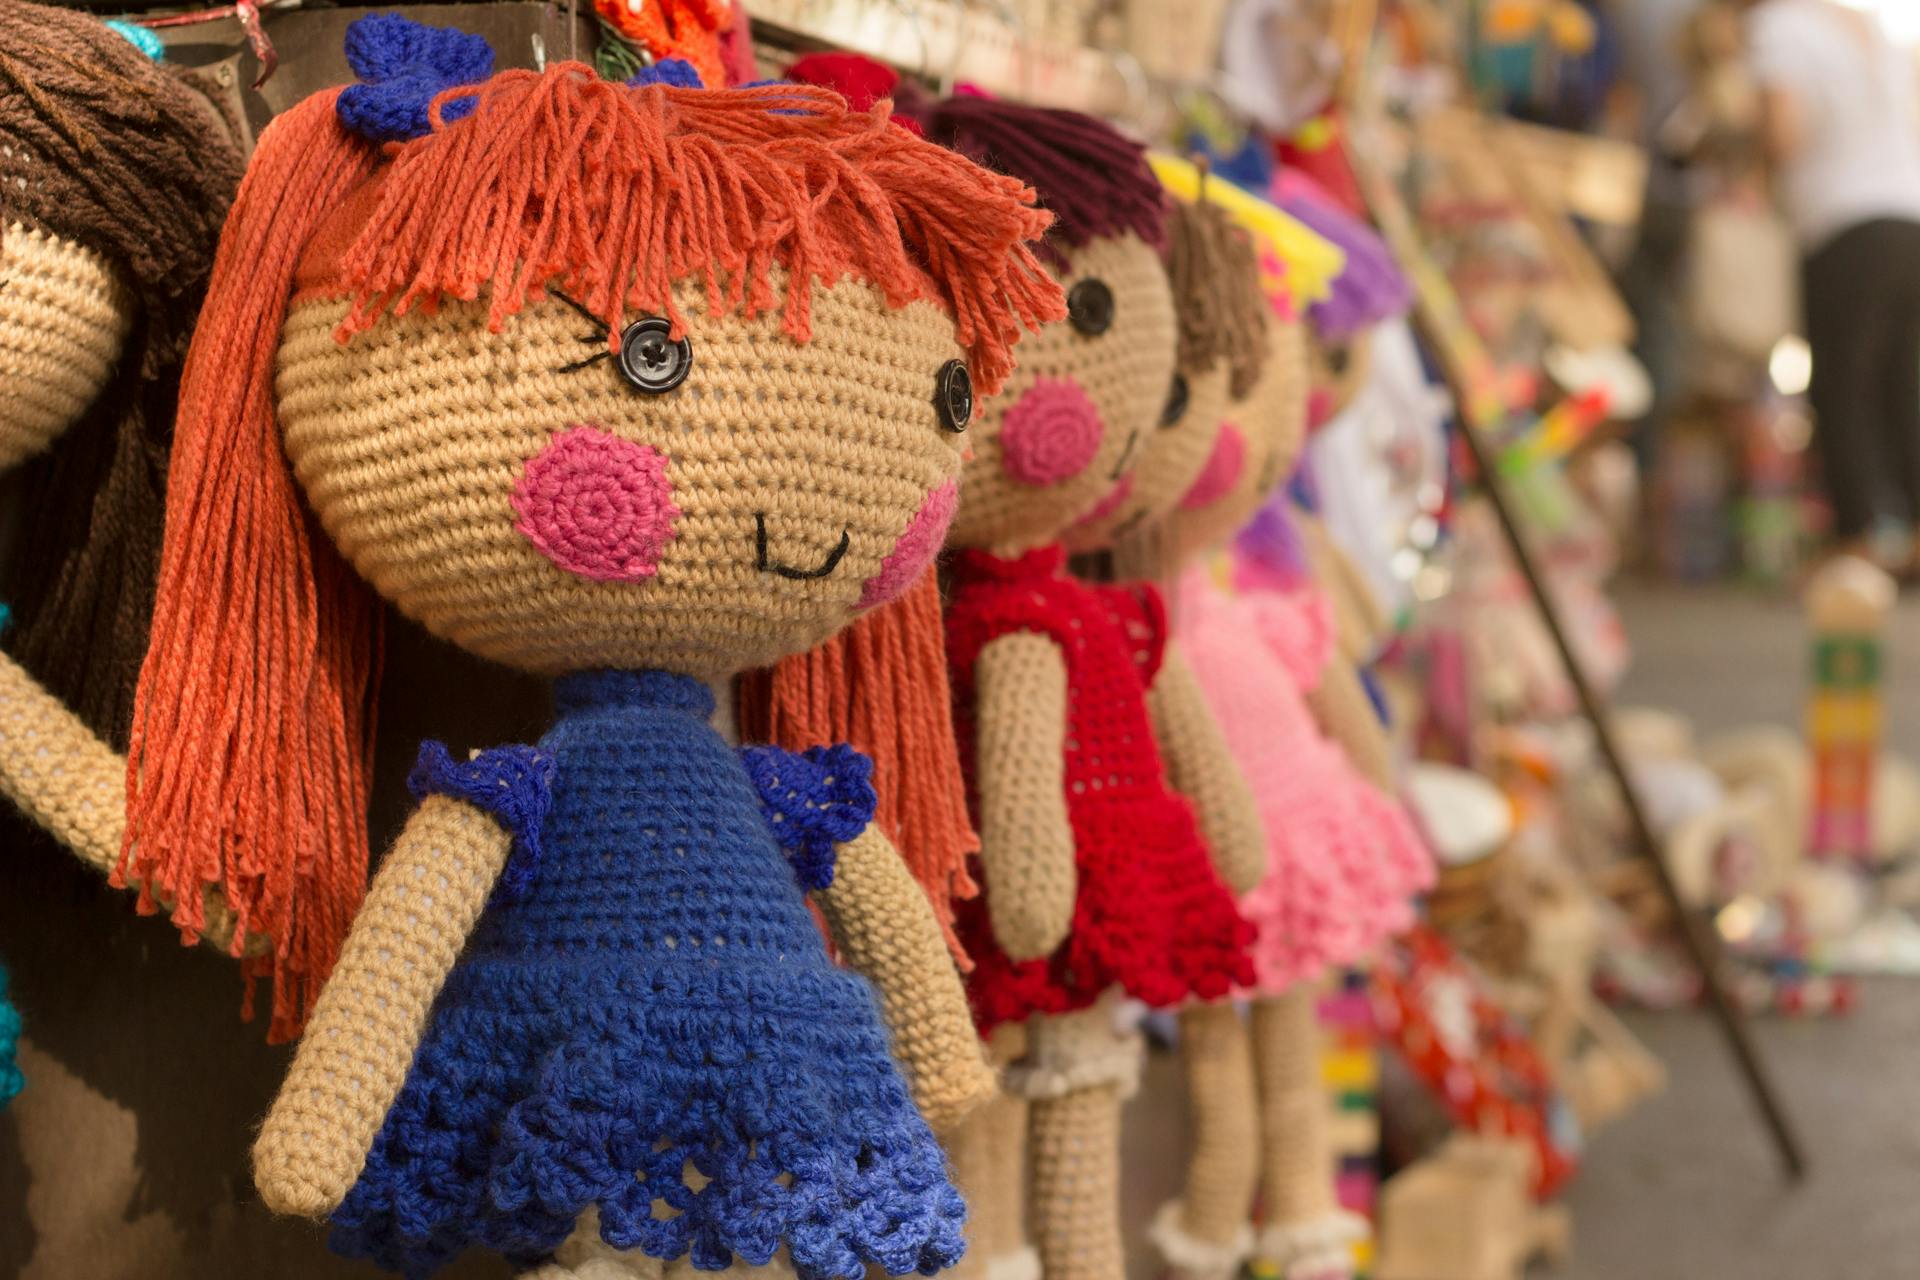 Muñecas de ganchillo colgadas en una tienda | Fuente: Pexels